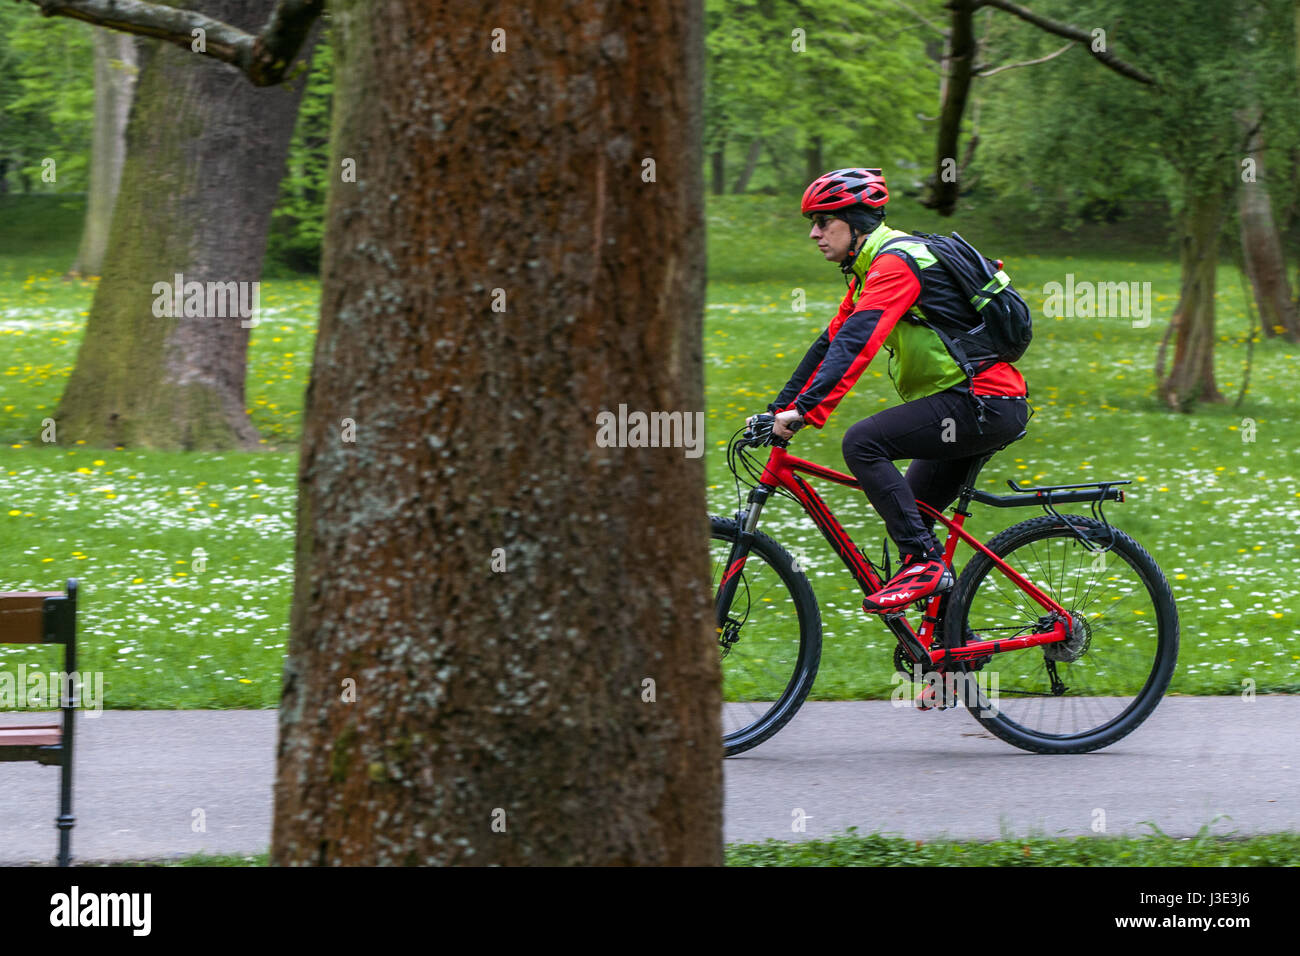 Cycliste à vélo sur une piste cyclable dans un parc Banque D'Images